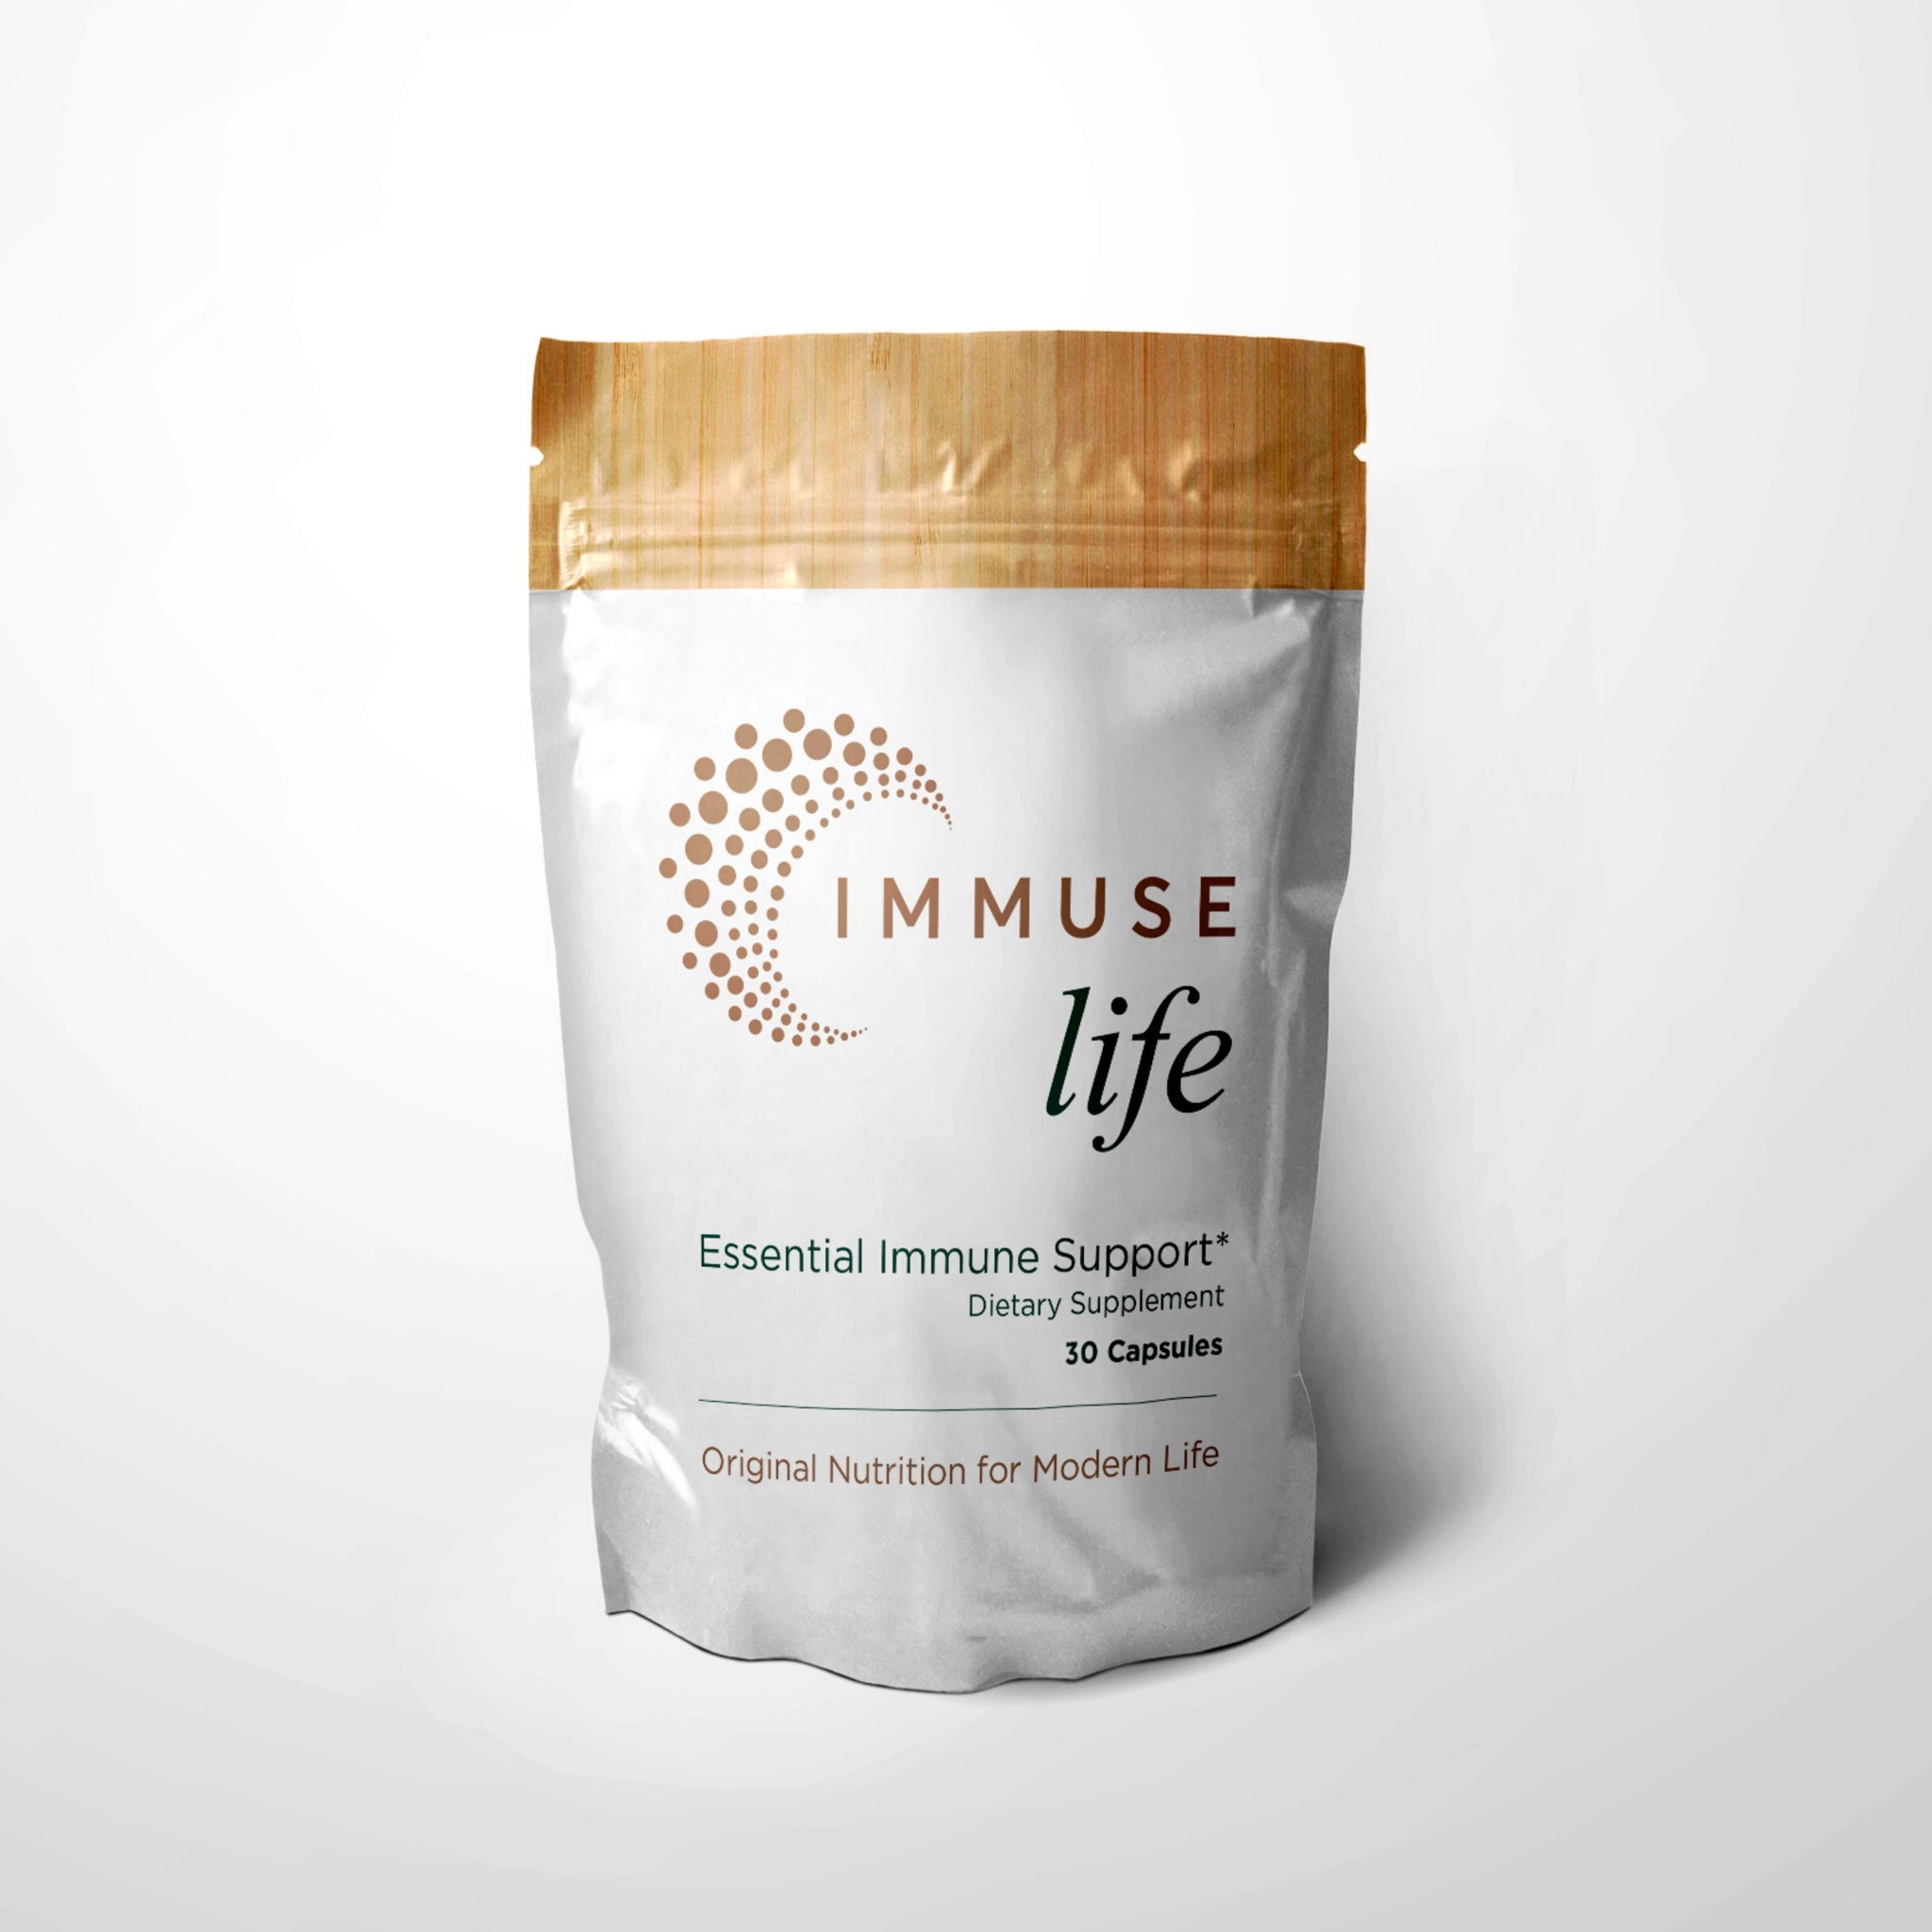 IMMUSE life Essential Immune Support Supplement 30ct